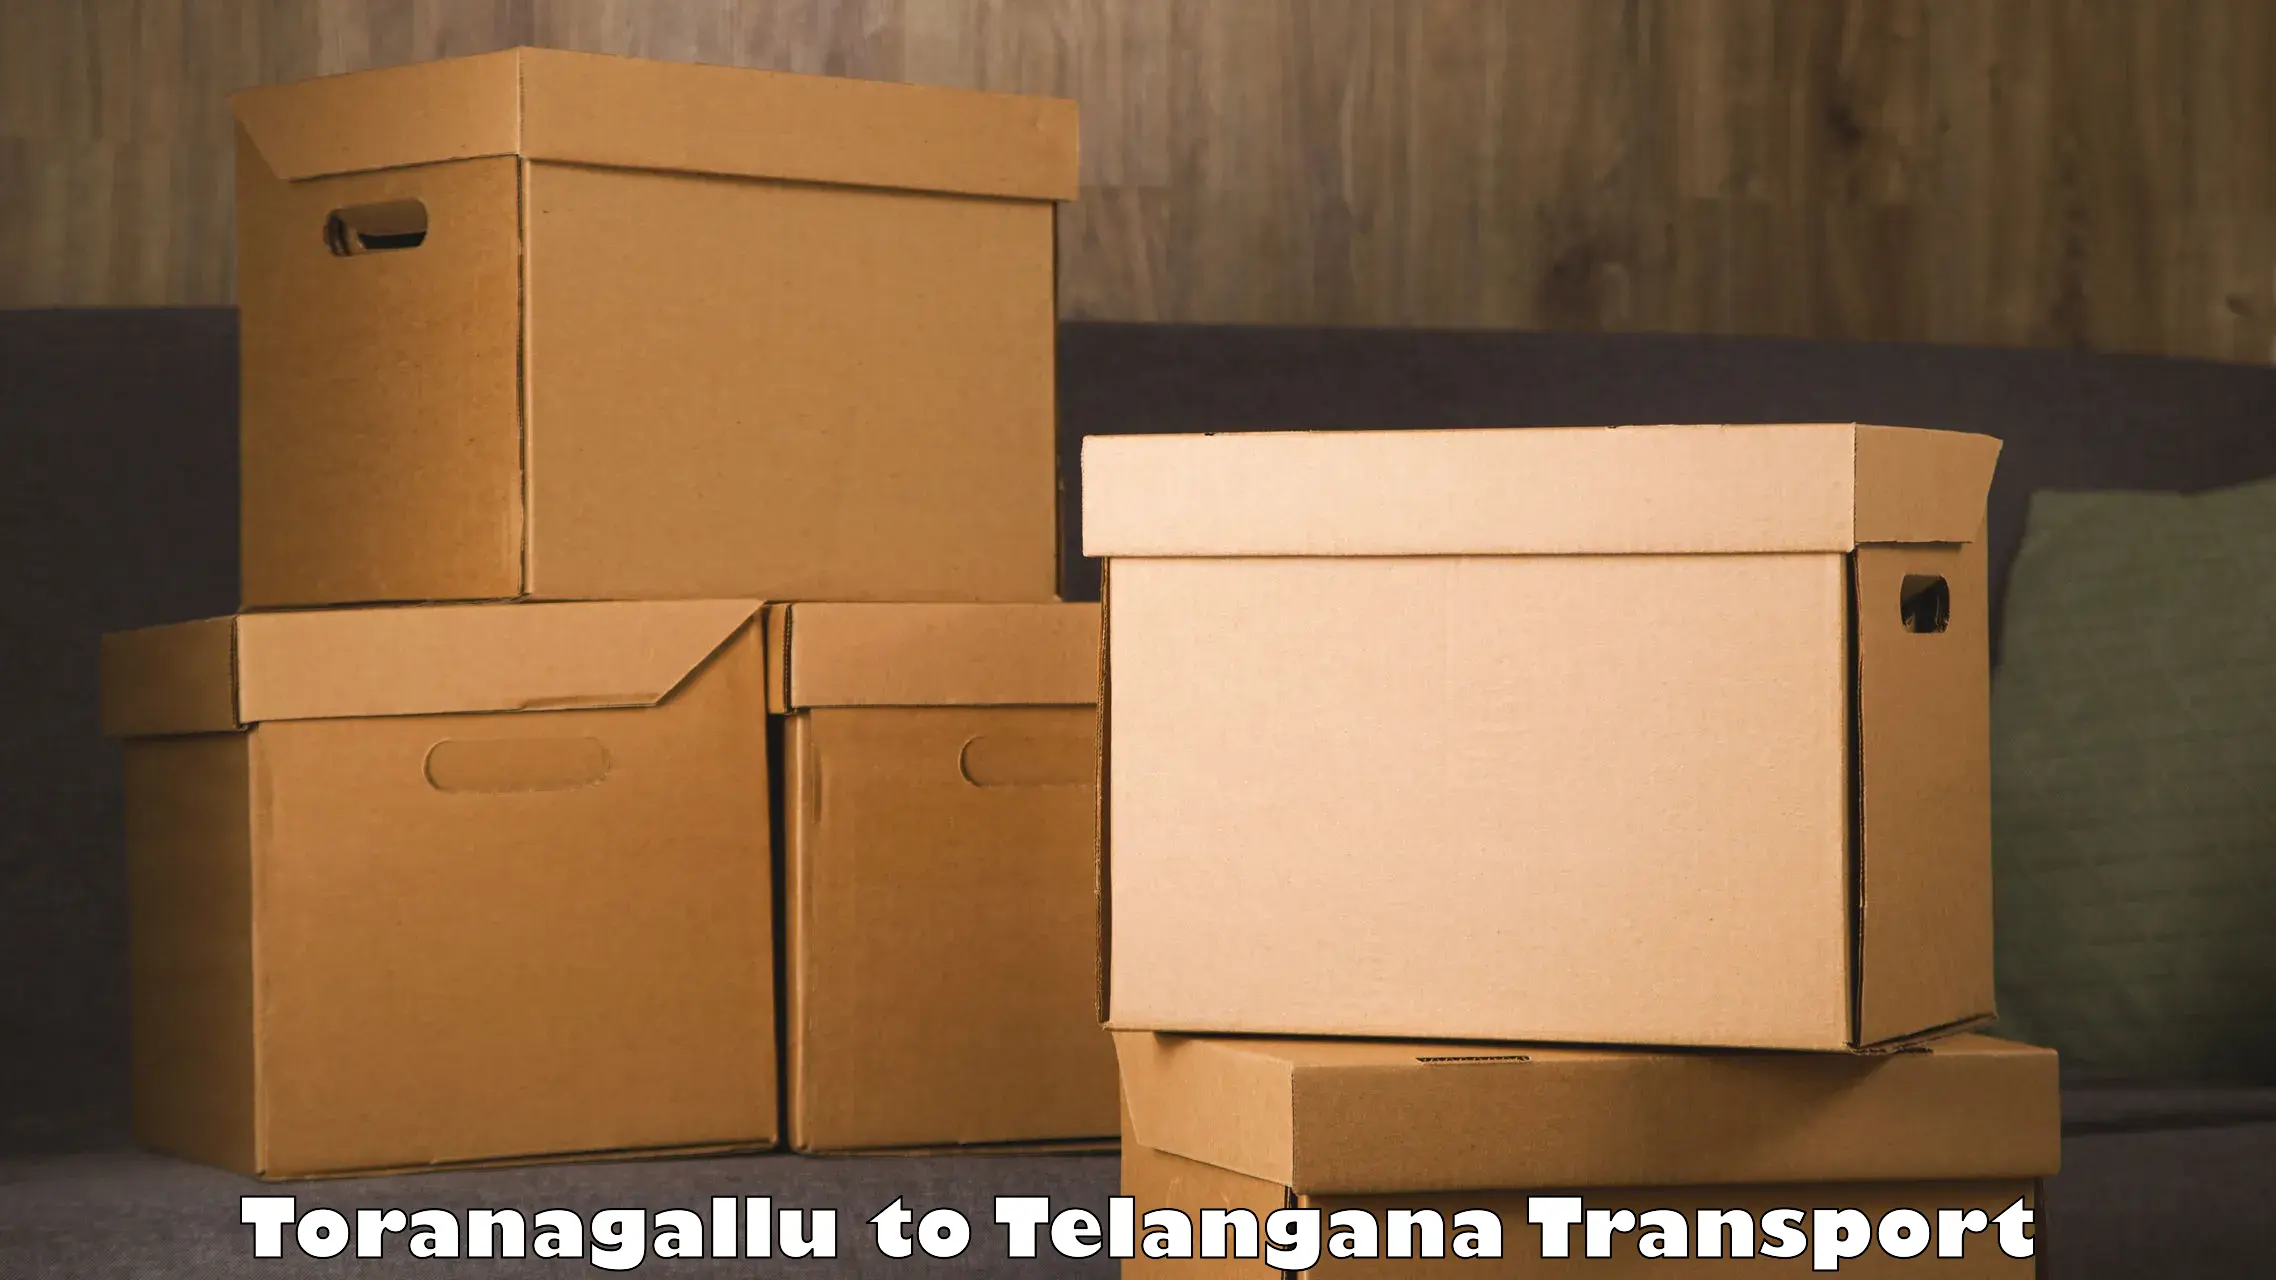 Container transport service Toranagallu to Jainad